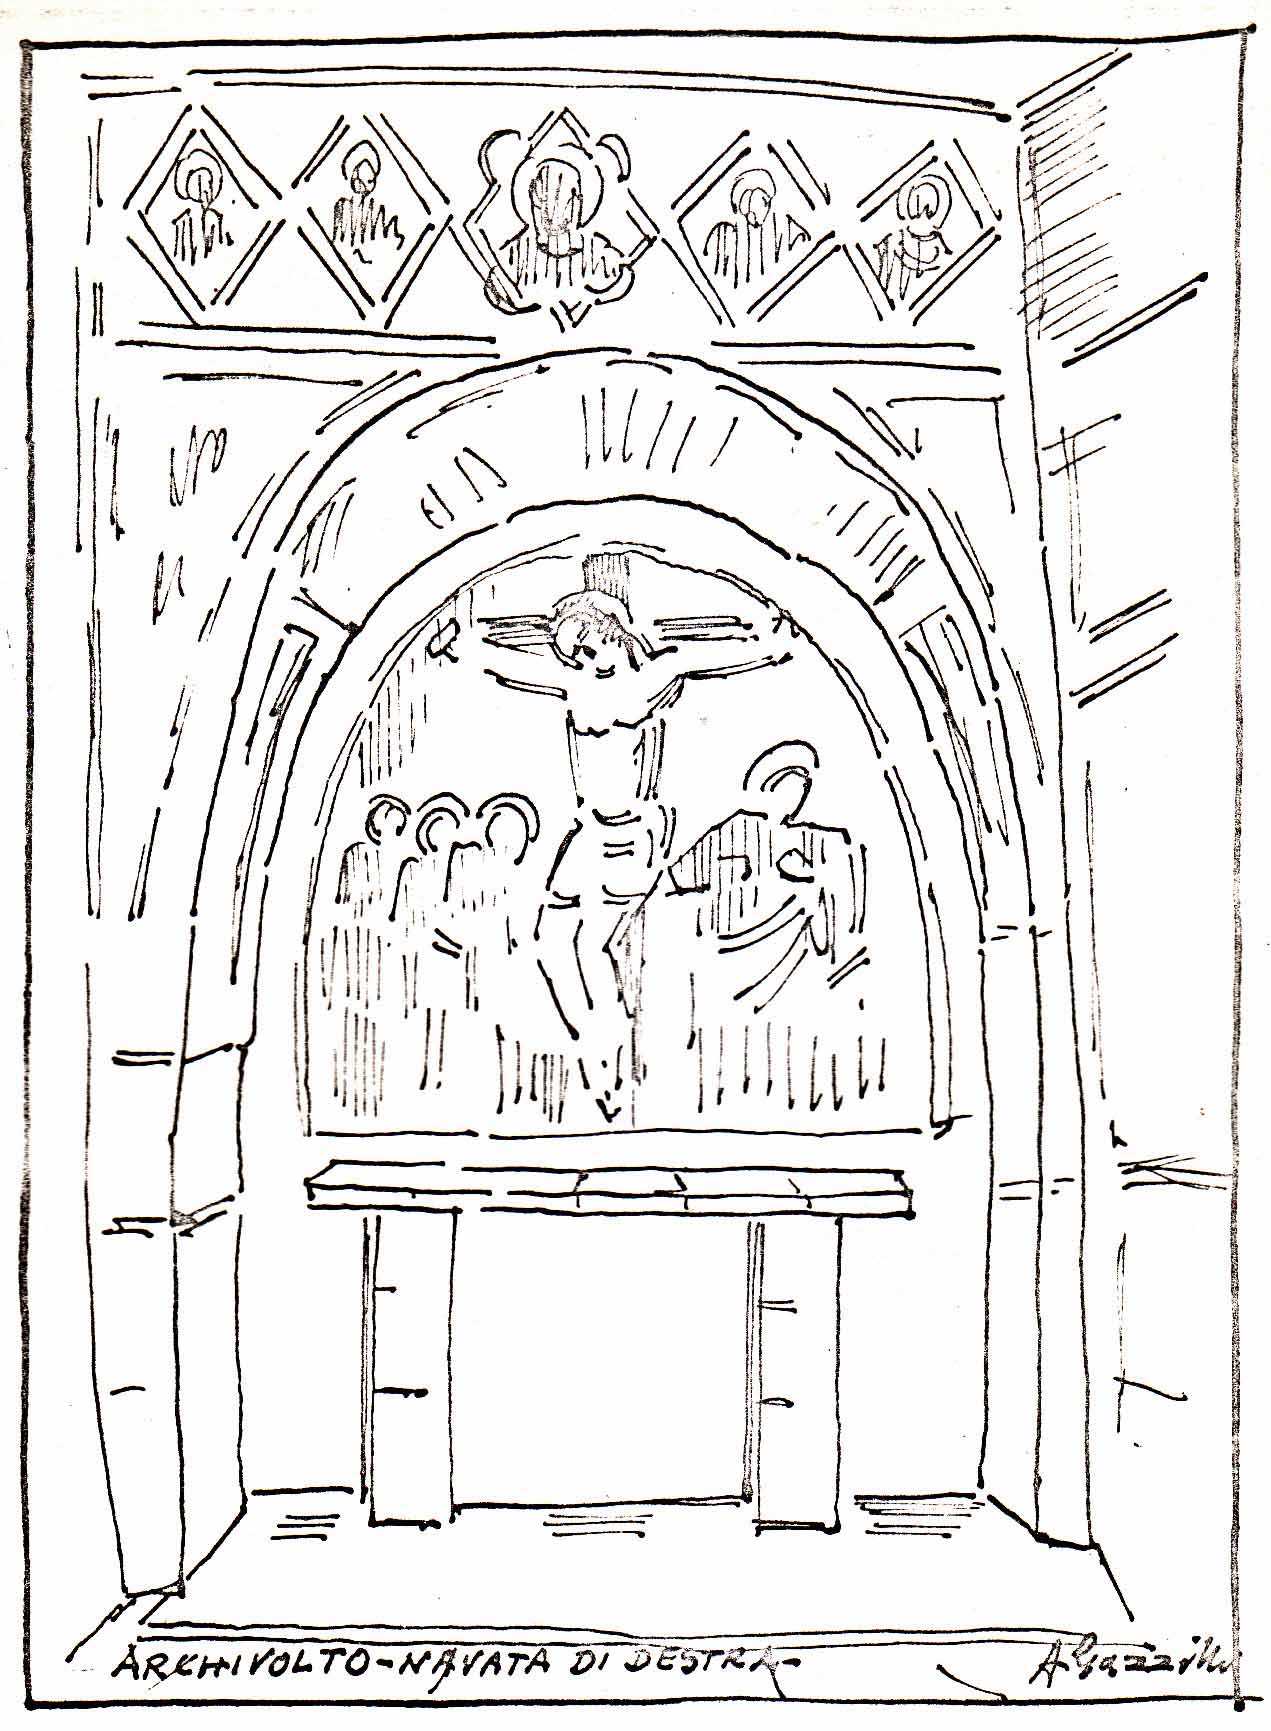 Archivolto della navata destra, schizzo di G.Gazzilli, 1968